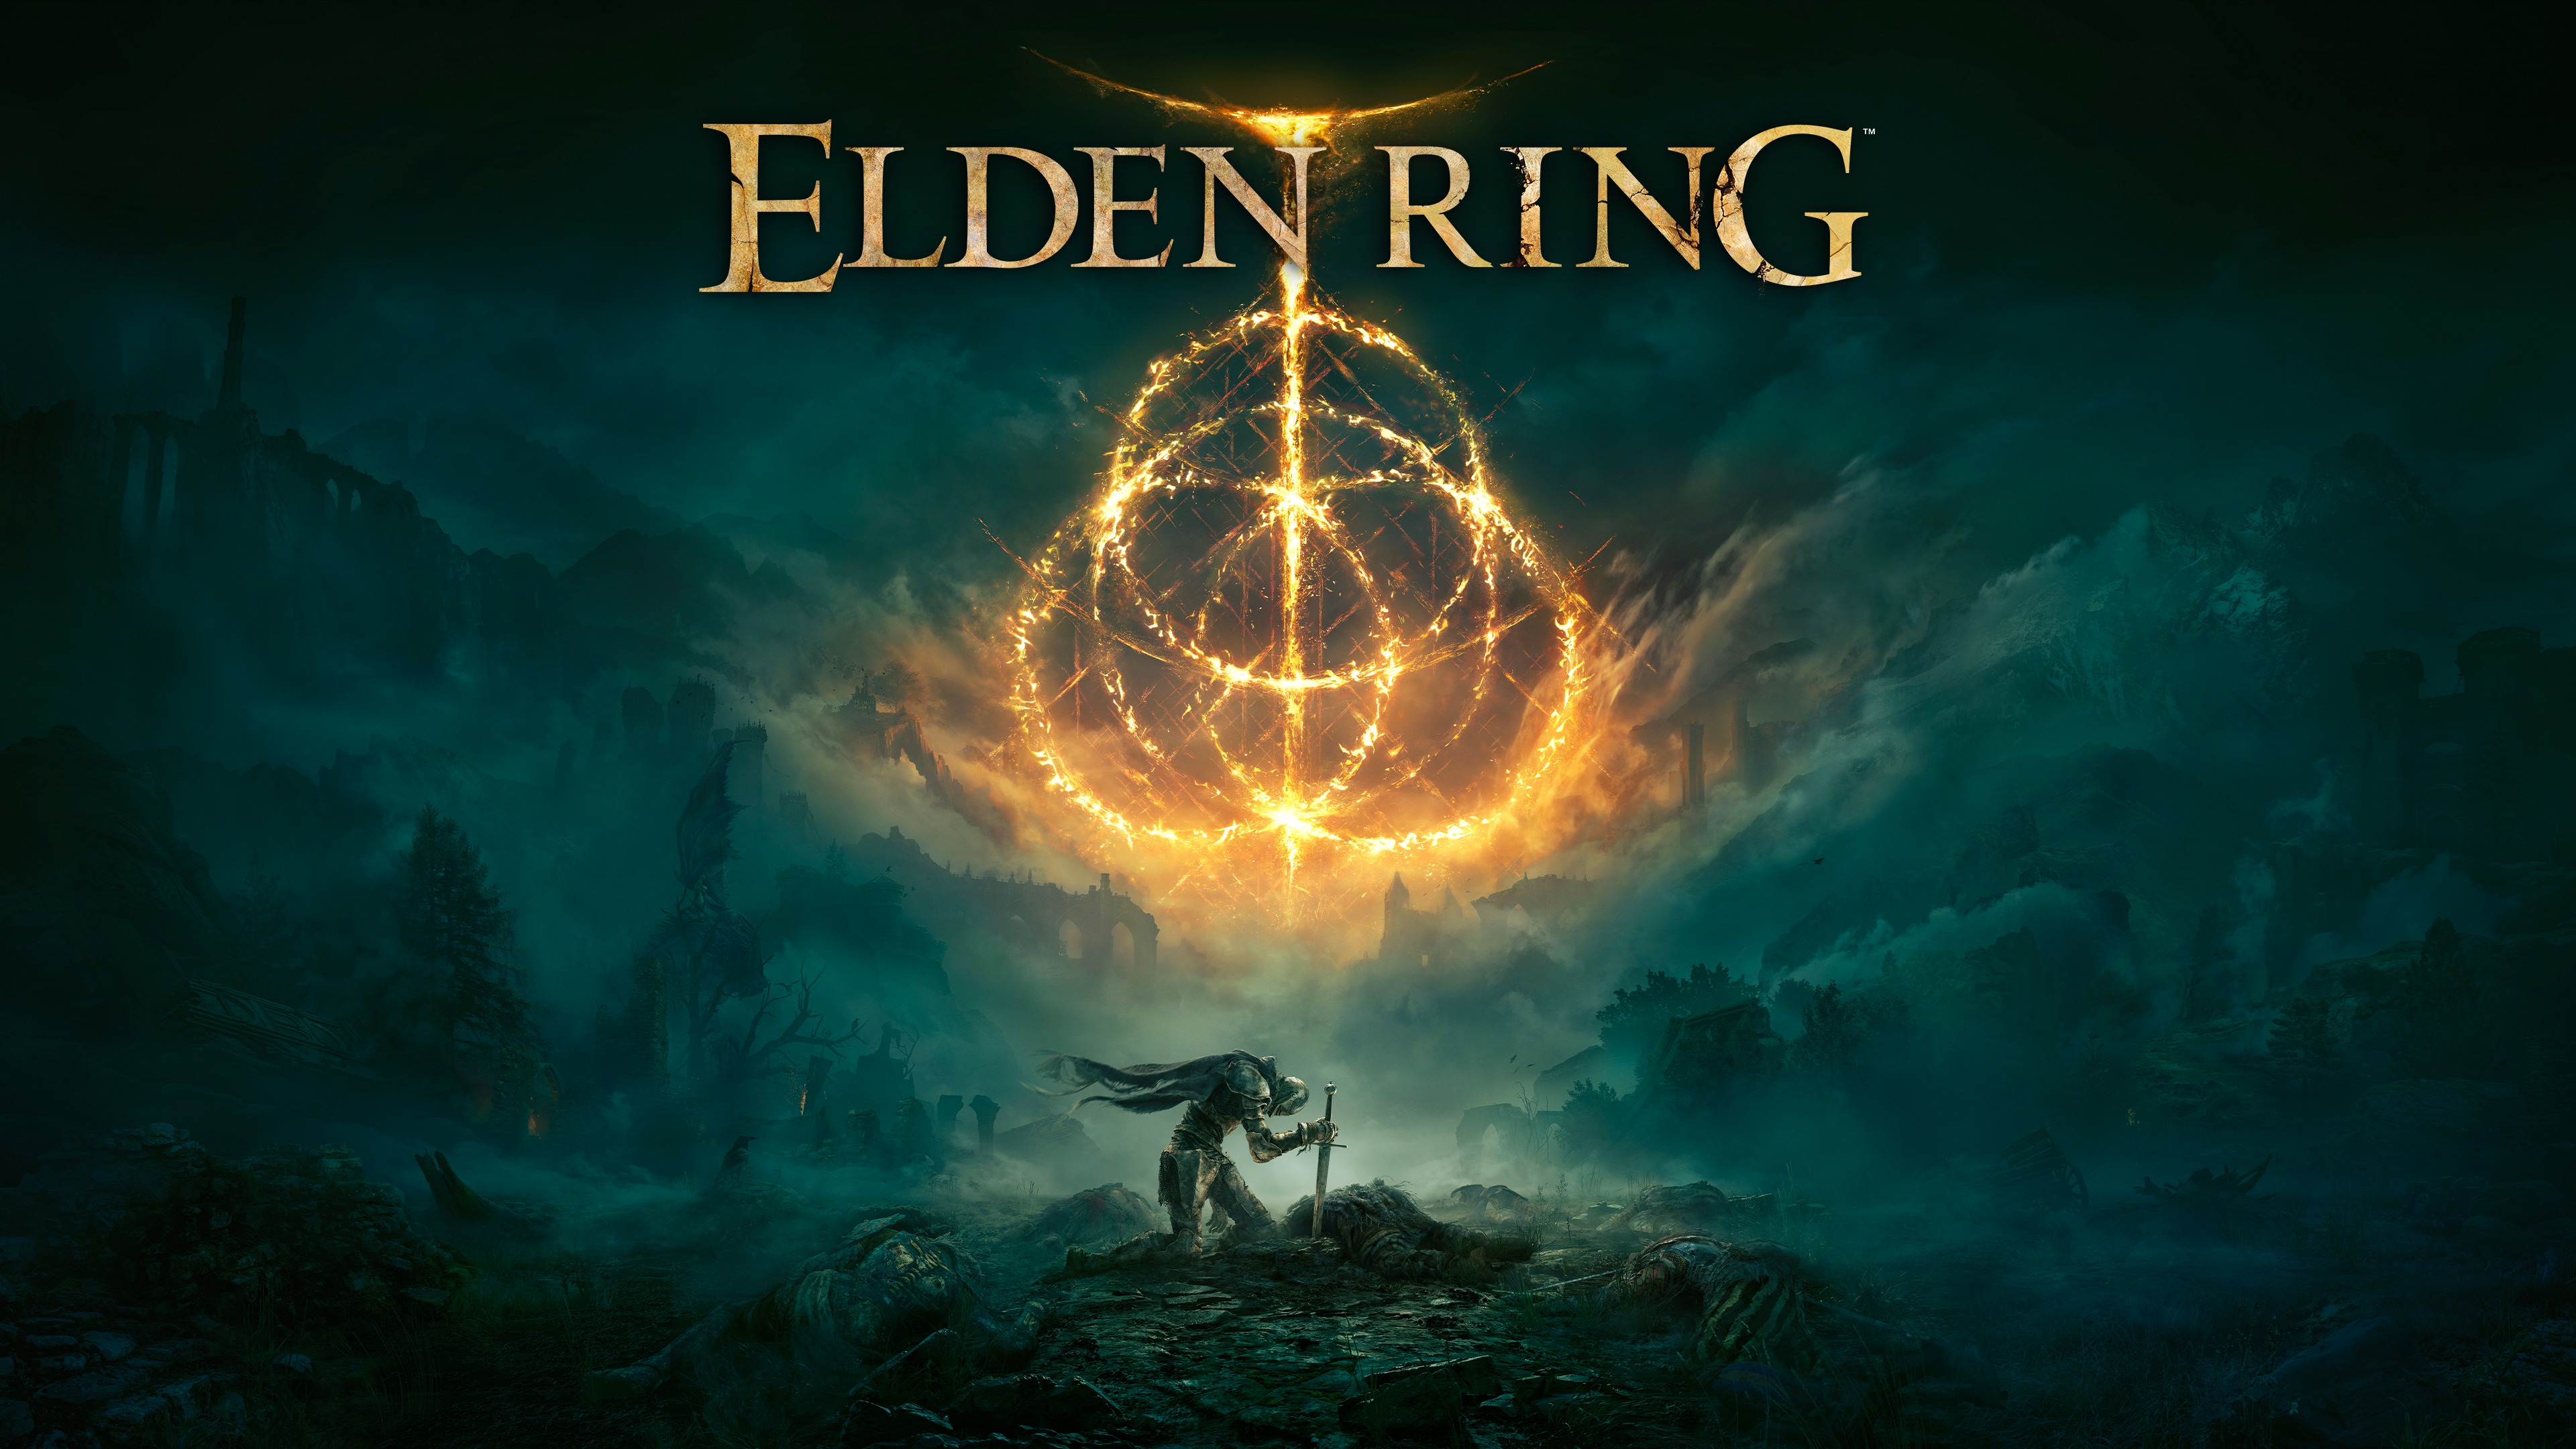 High Definition Elden Ring background